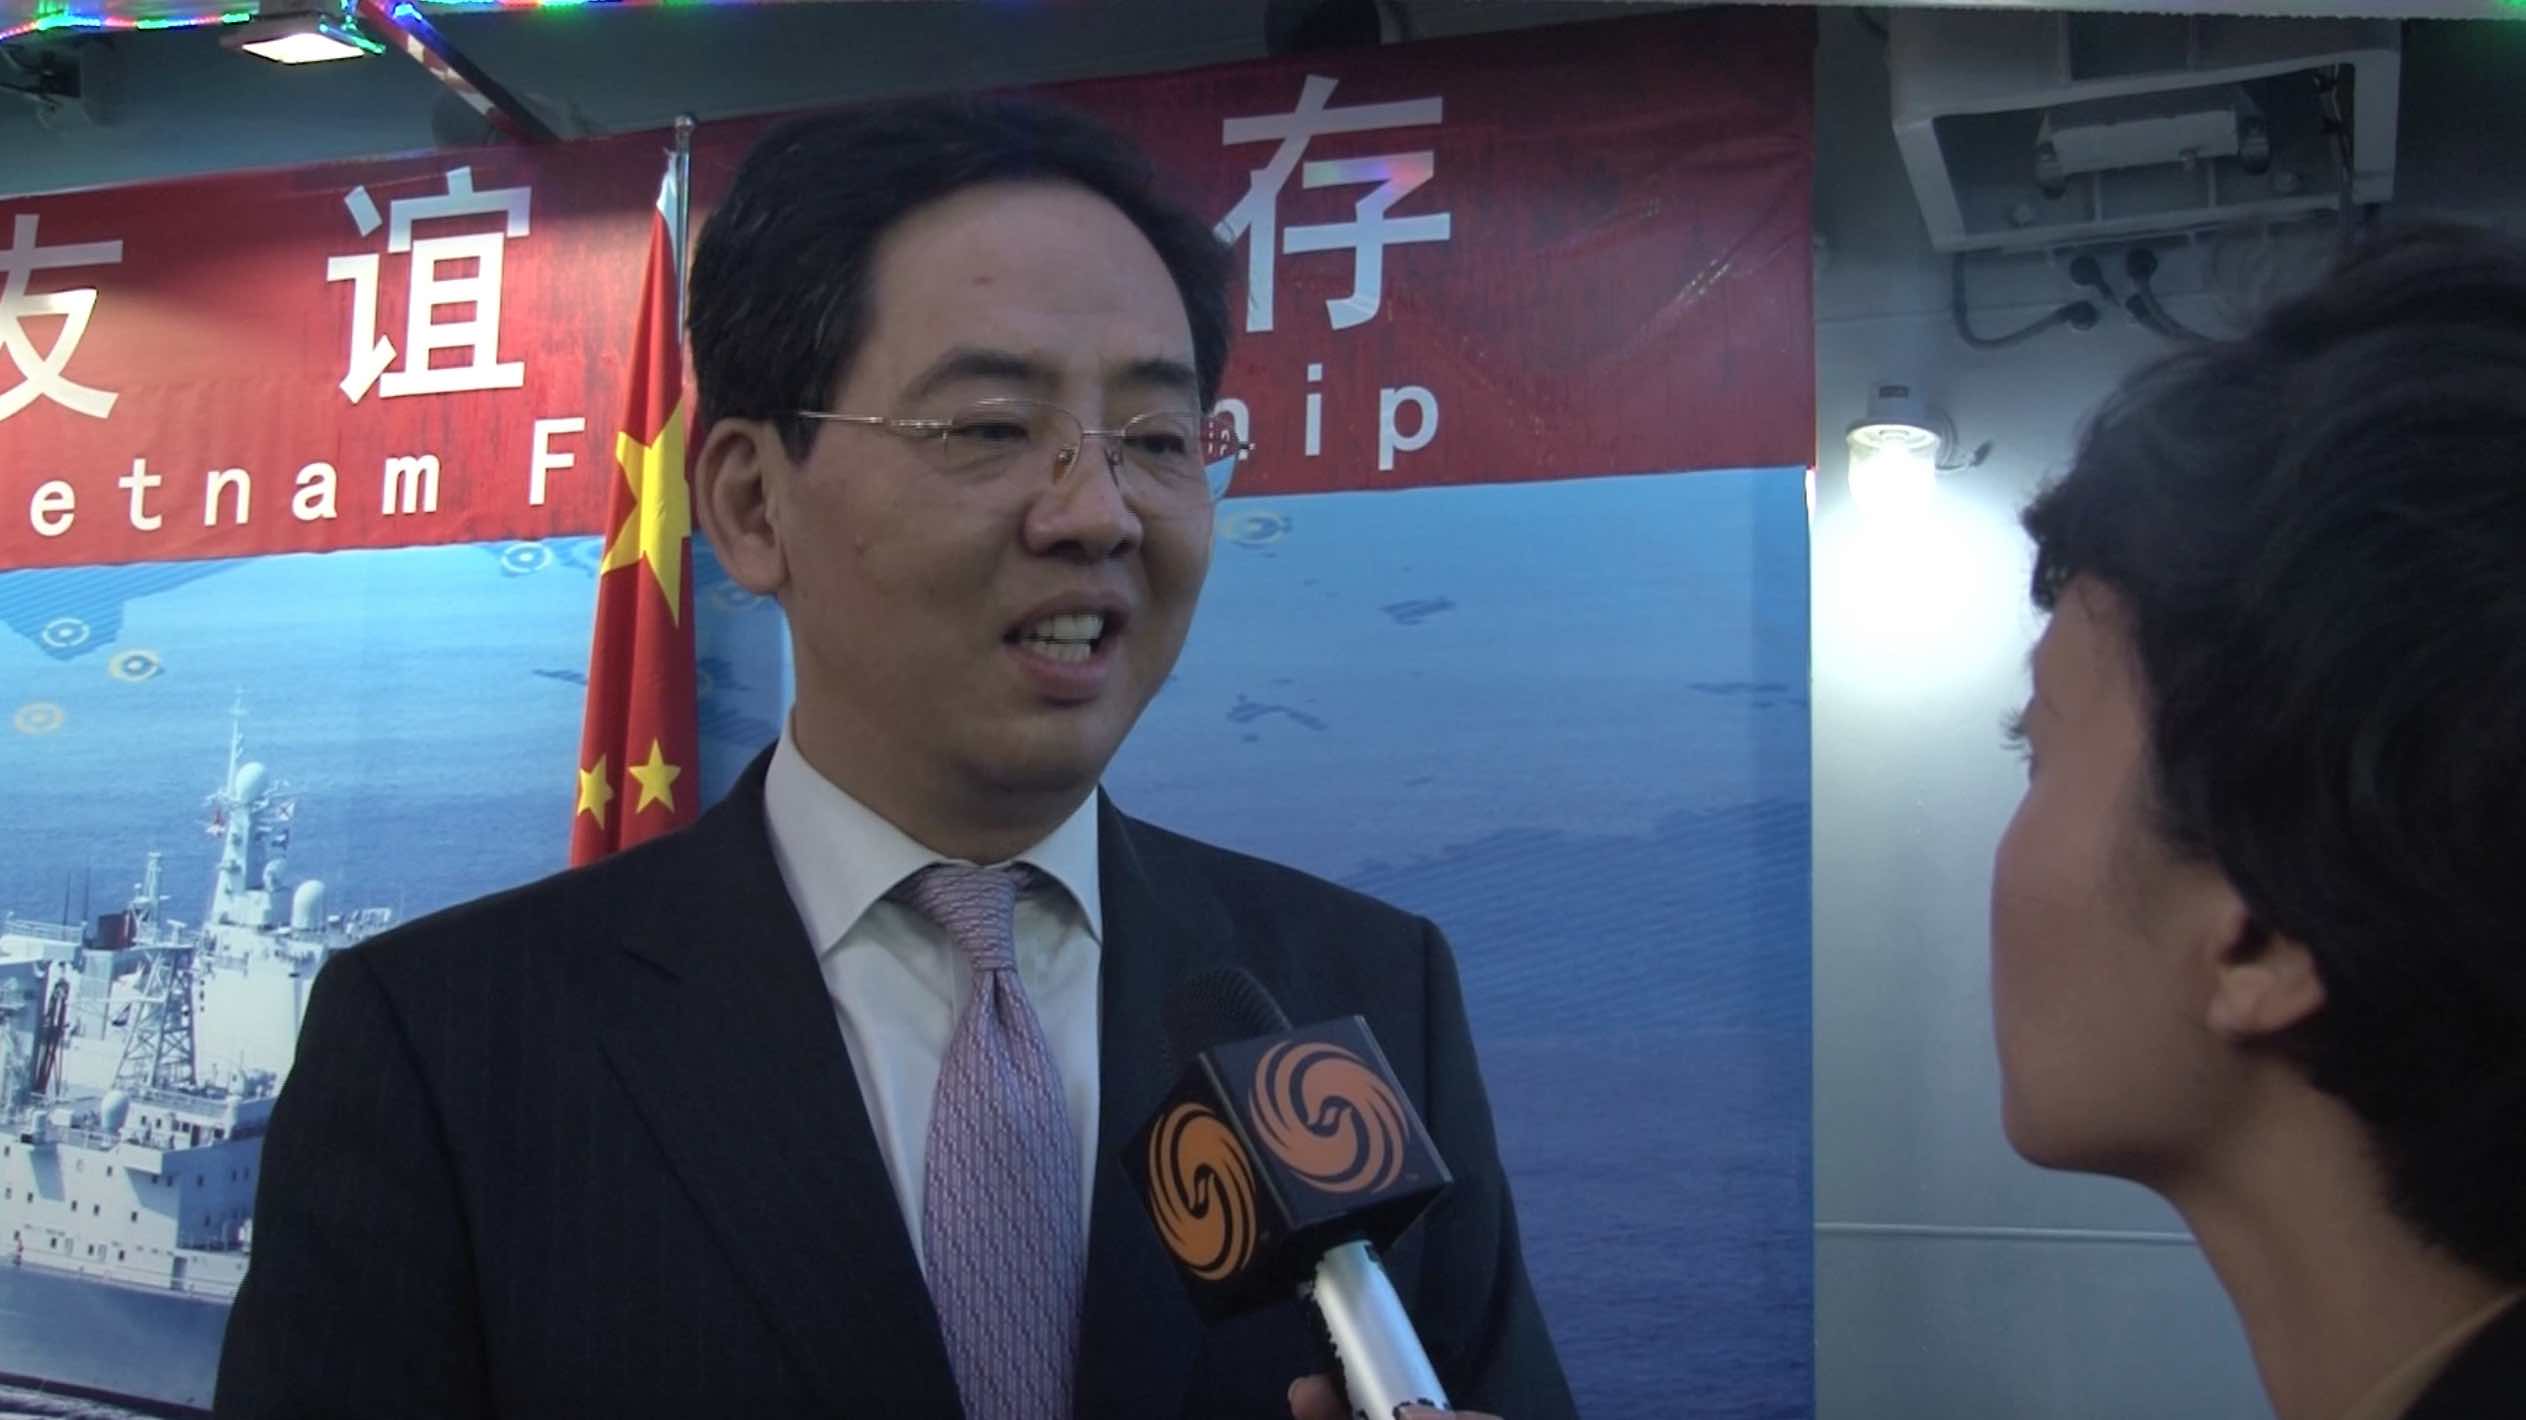 中国海军远航编队访问越南 增进互信促地区稳定